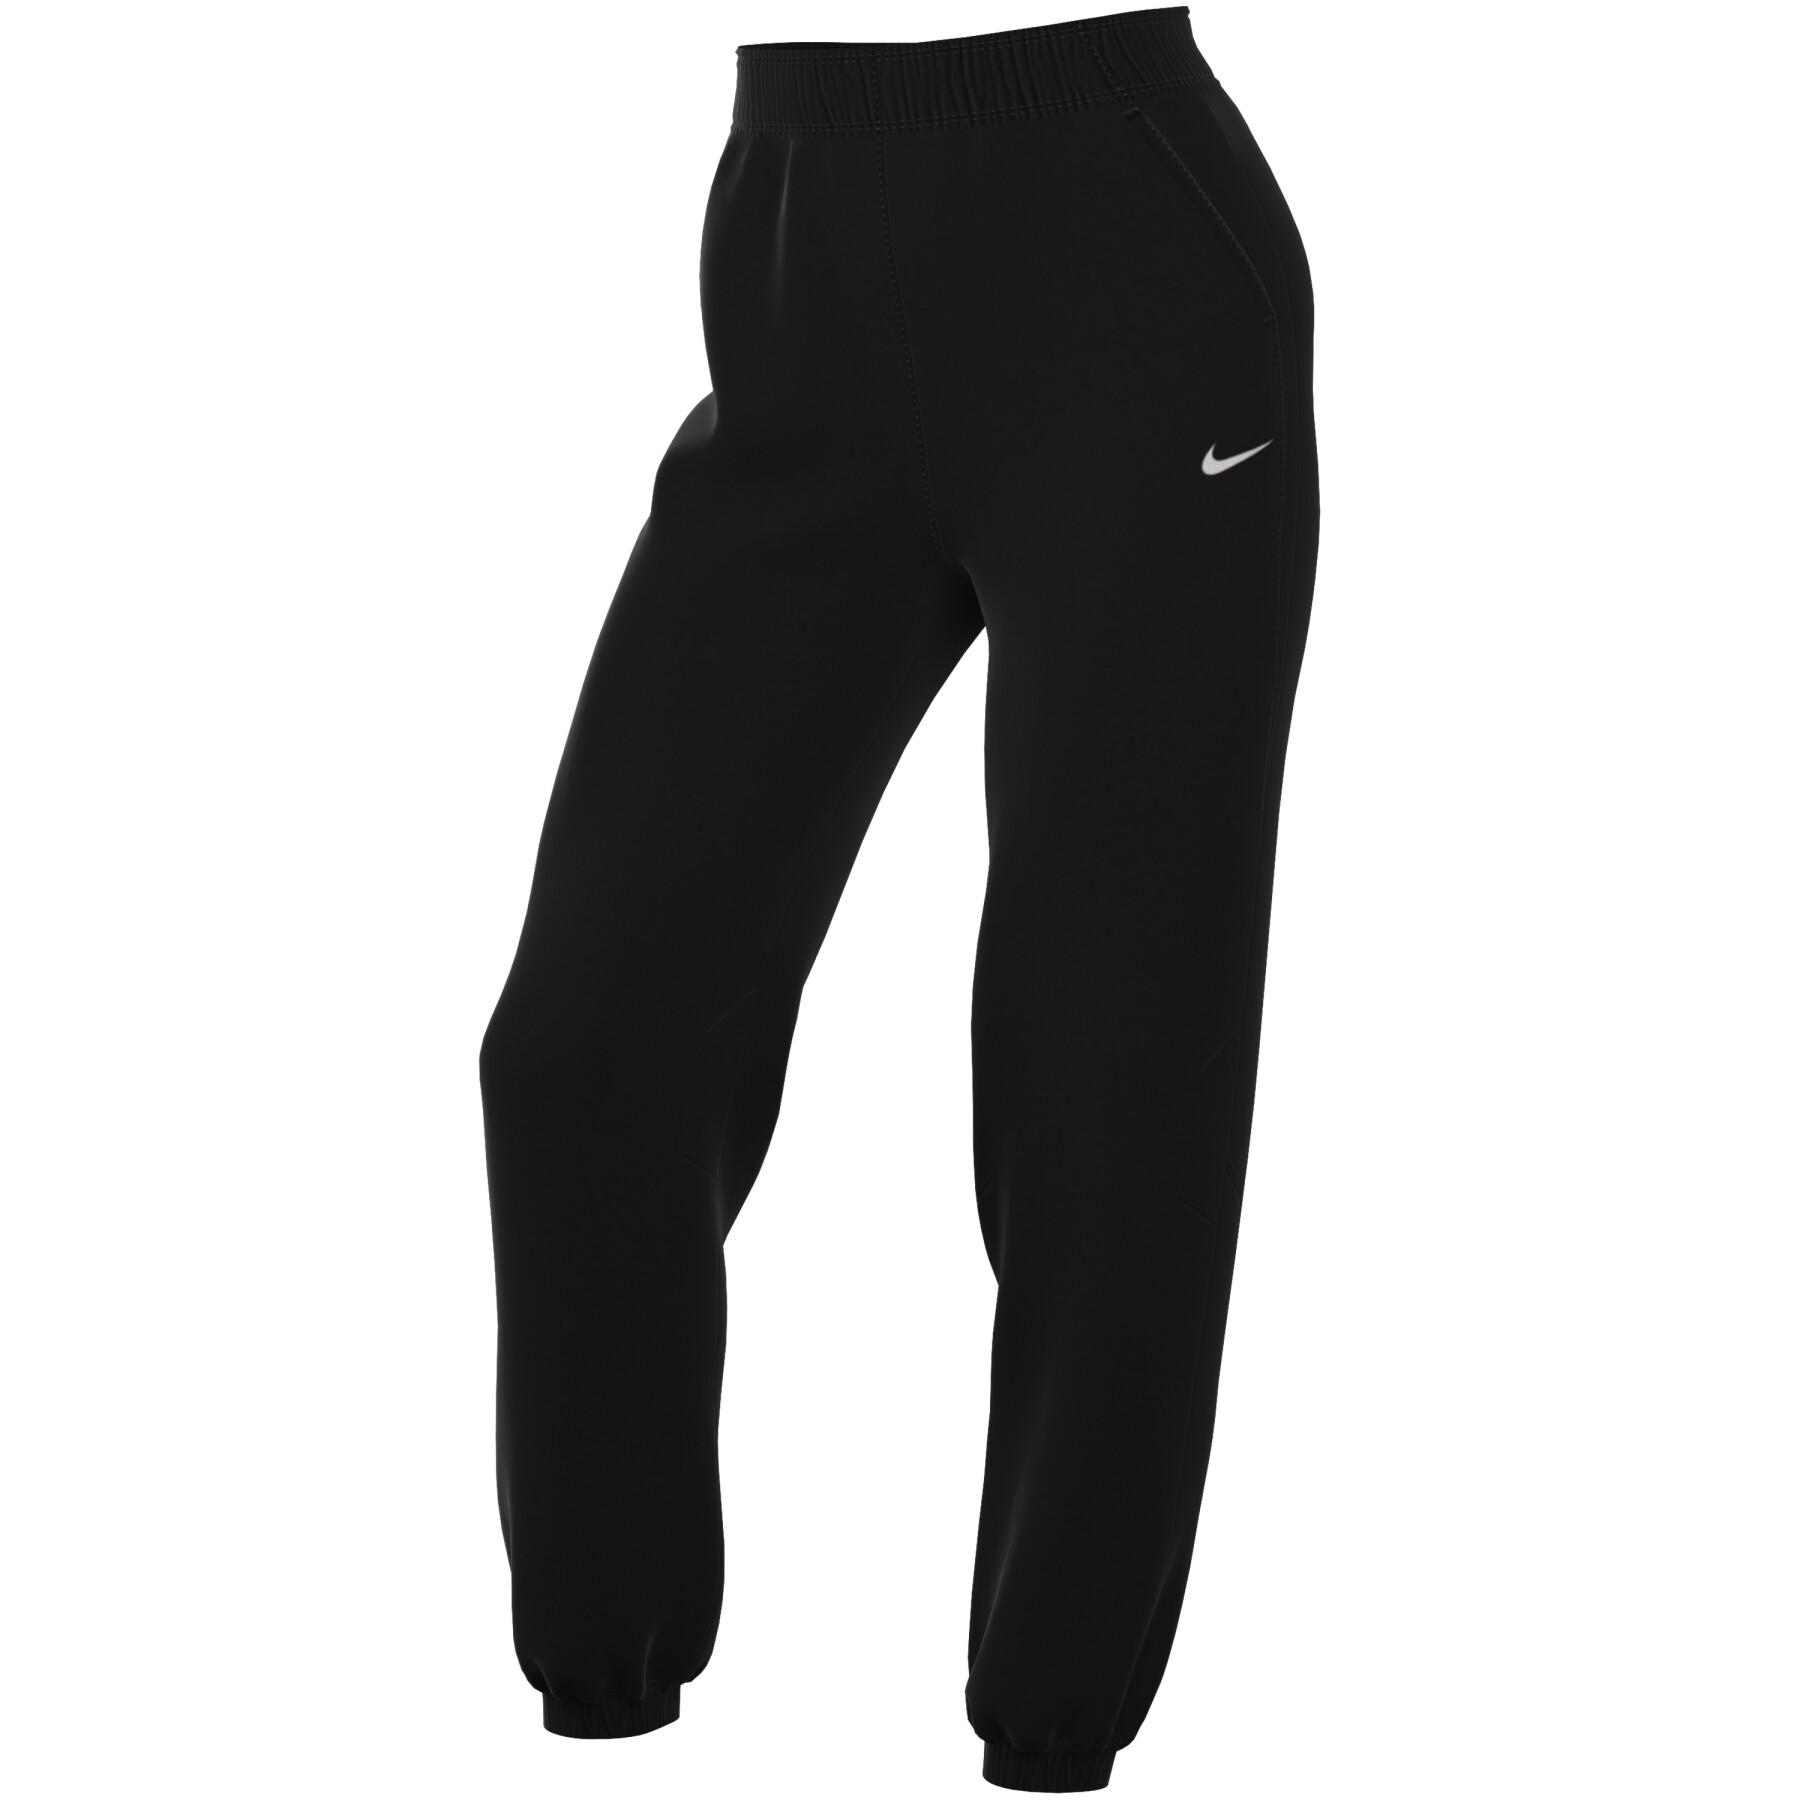 Women's 7/8 jogging suit Nike Dri-FIT Fast - Nike - Brands - Handball wear